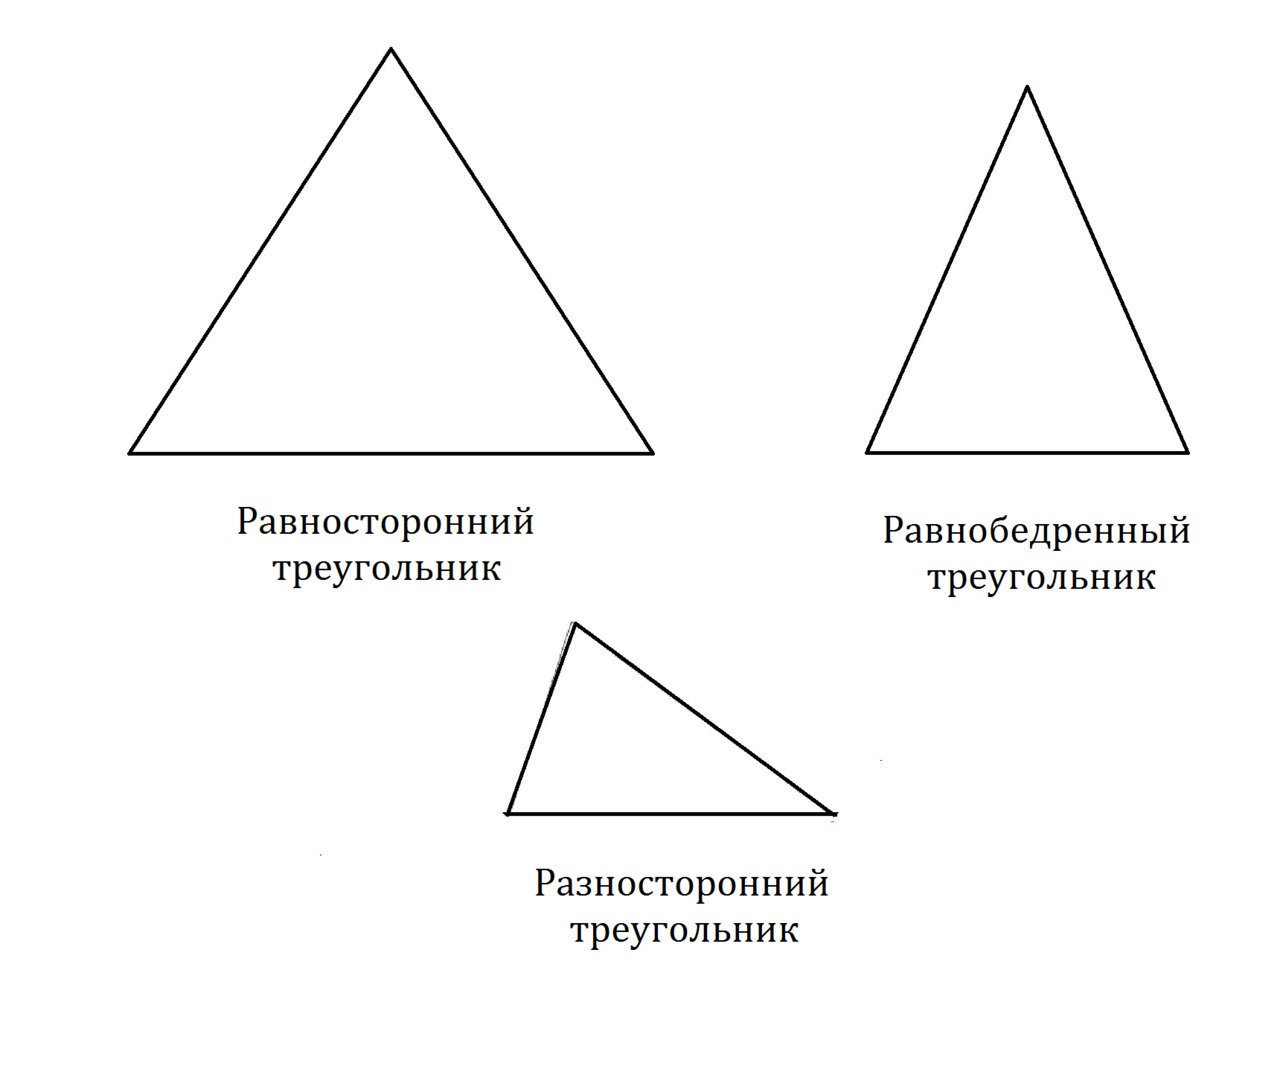 Равнобедренный и равносторонний треугольник